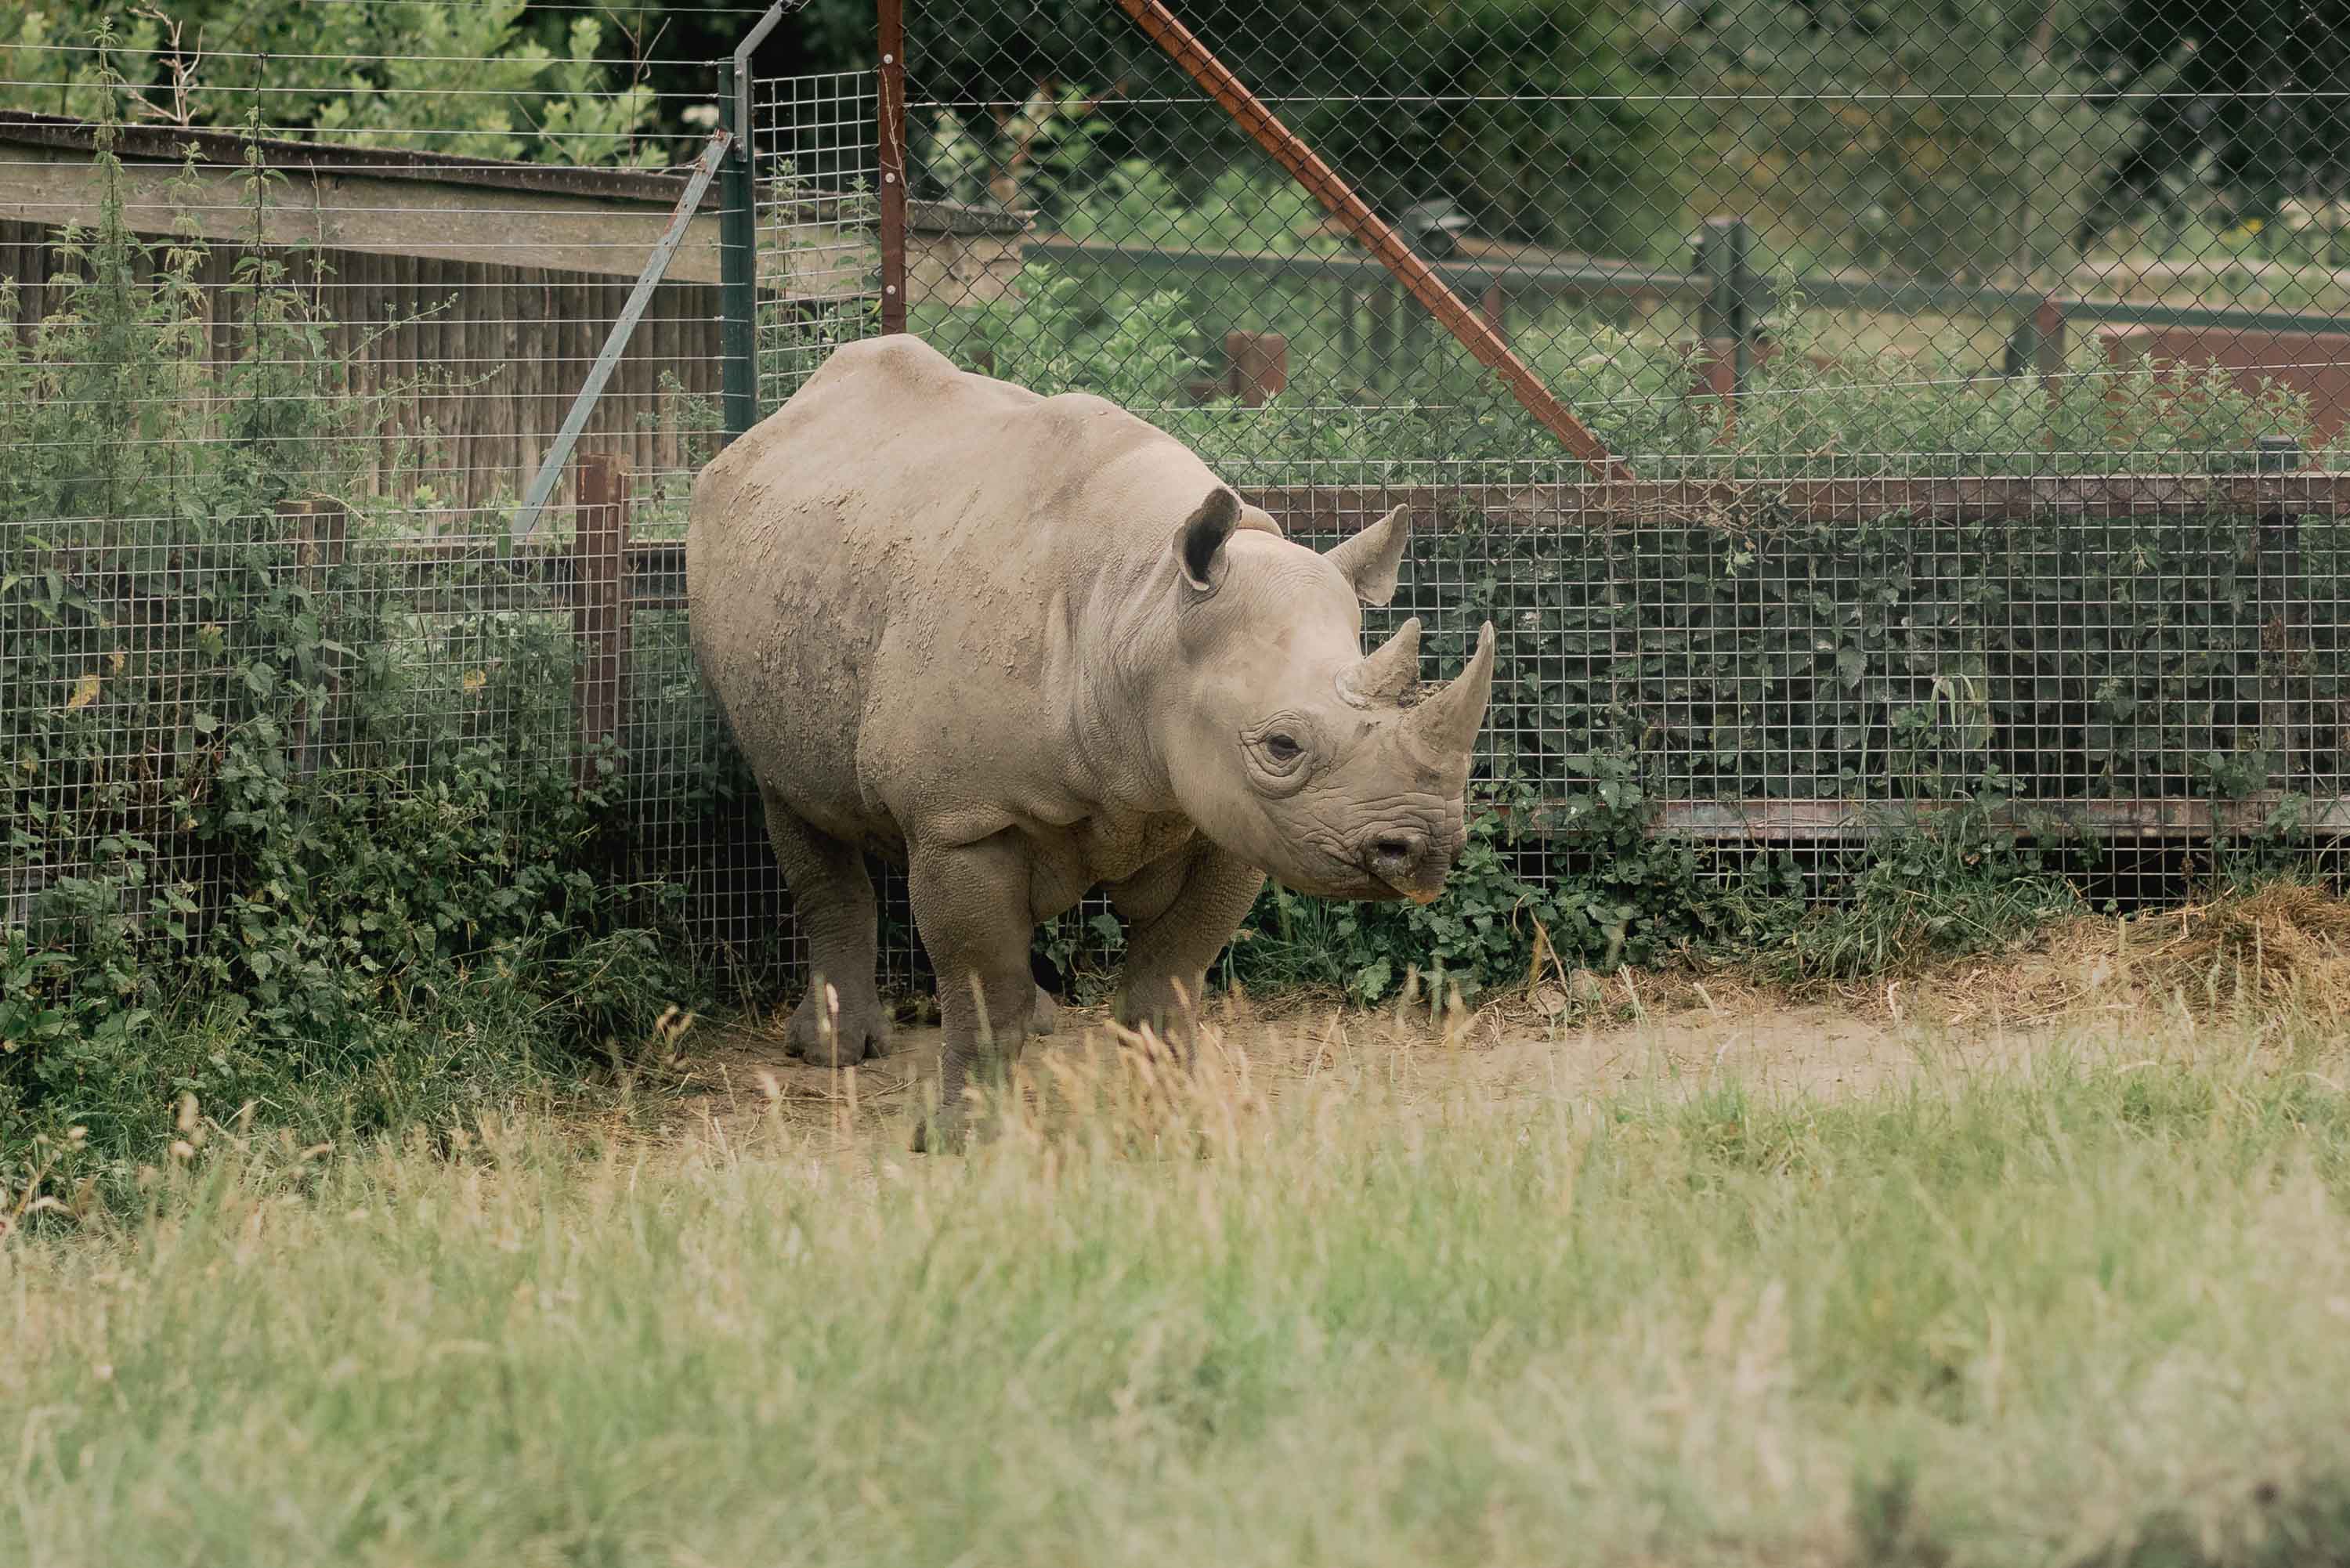 Rhino at Port Lympne Safari Park in Kent.